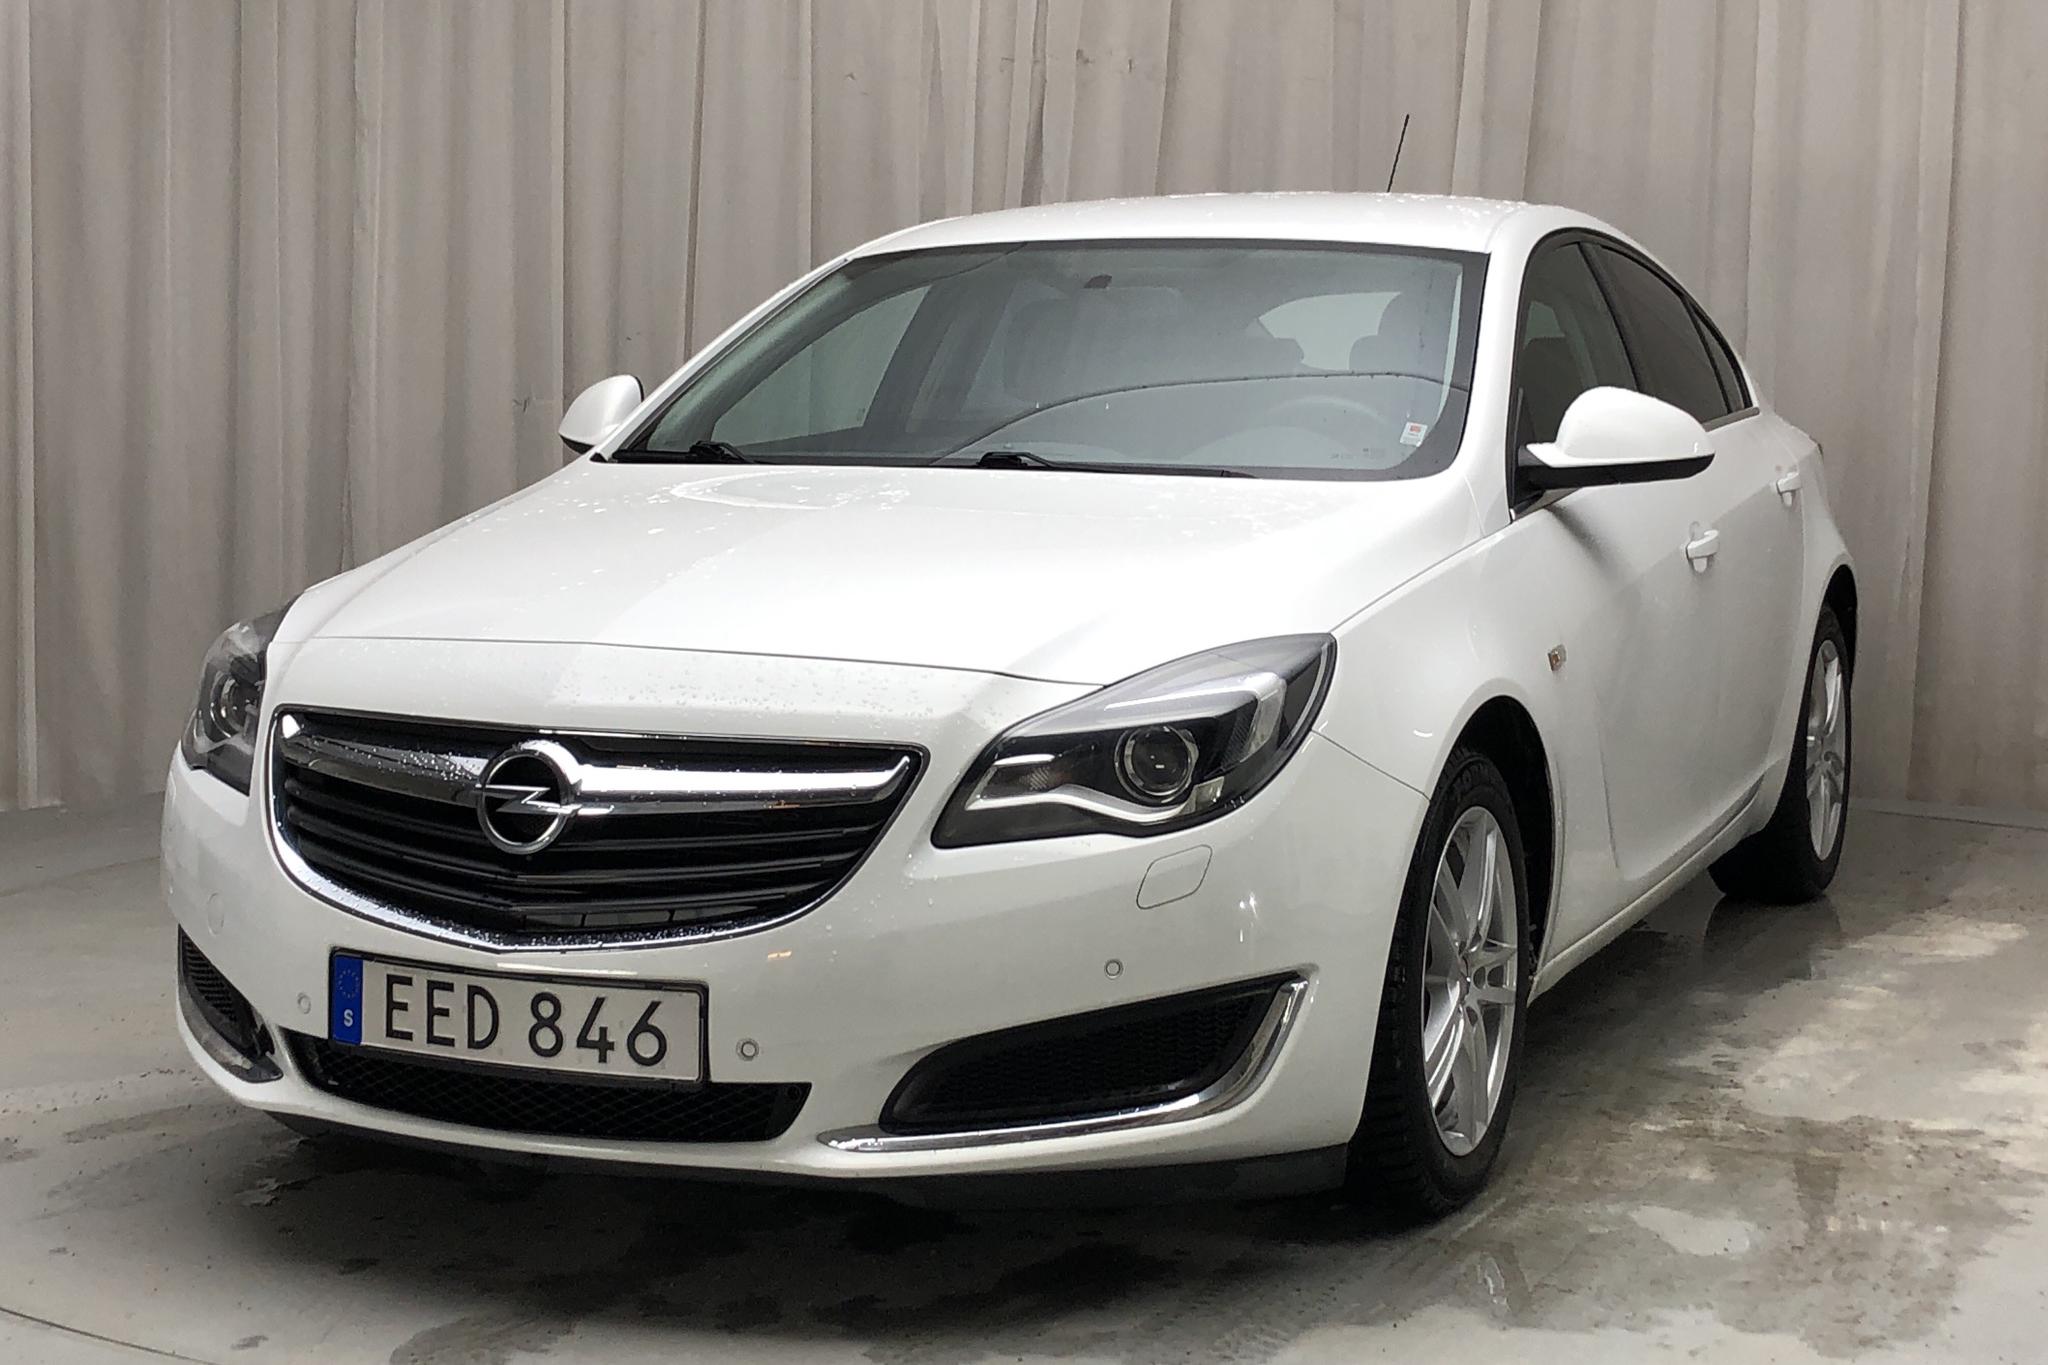 Opel Insignia 1.6 CDTI ecoFLEX 5dr (136hk) - 4 591 mil - Manuell - vit - 2017